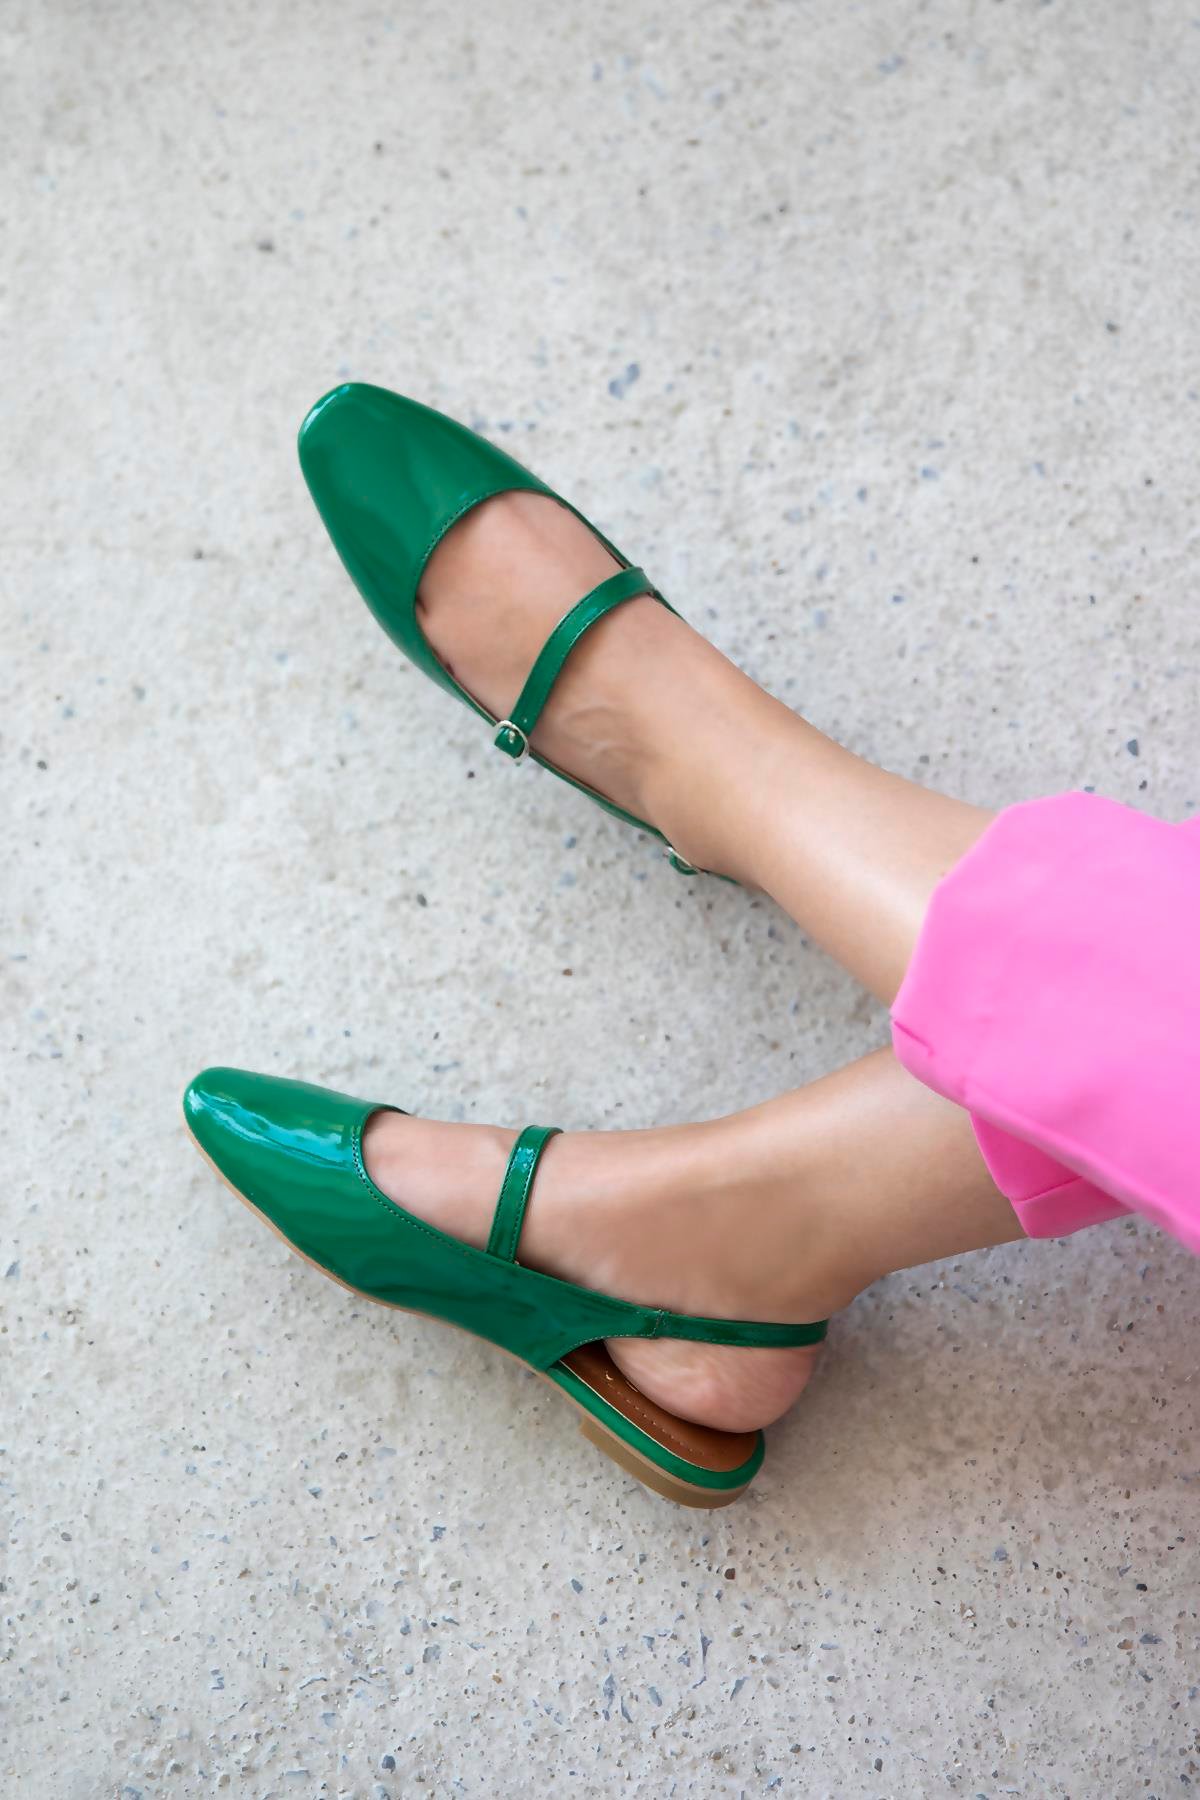 Afra Kadın Topuklu Rugan Ayakkabı Yeşil | Straswans.com